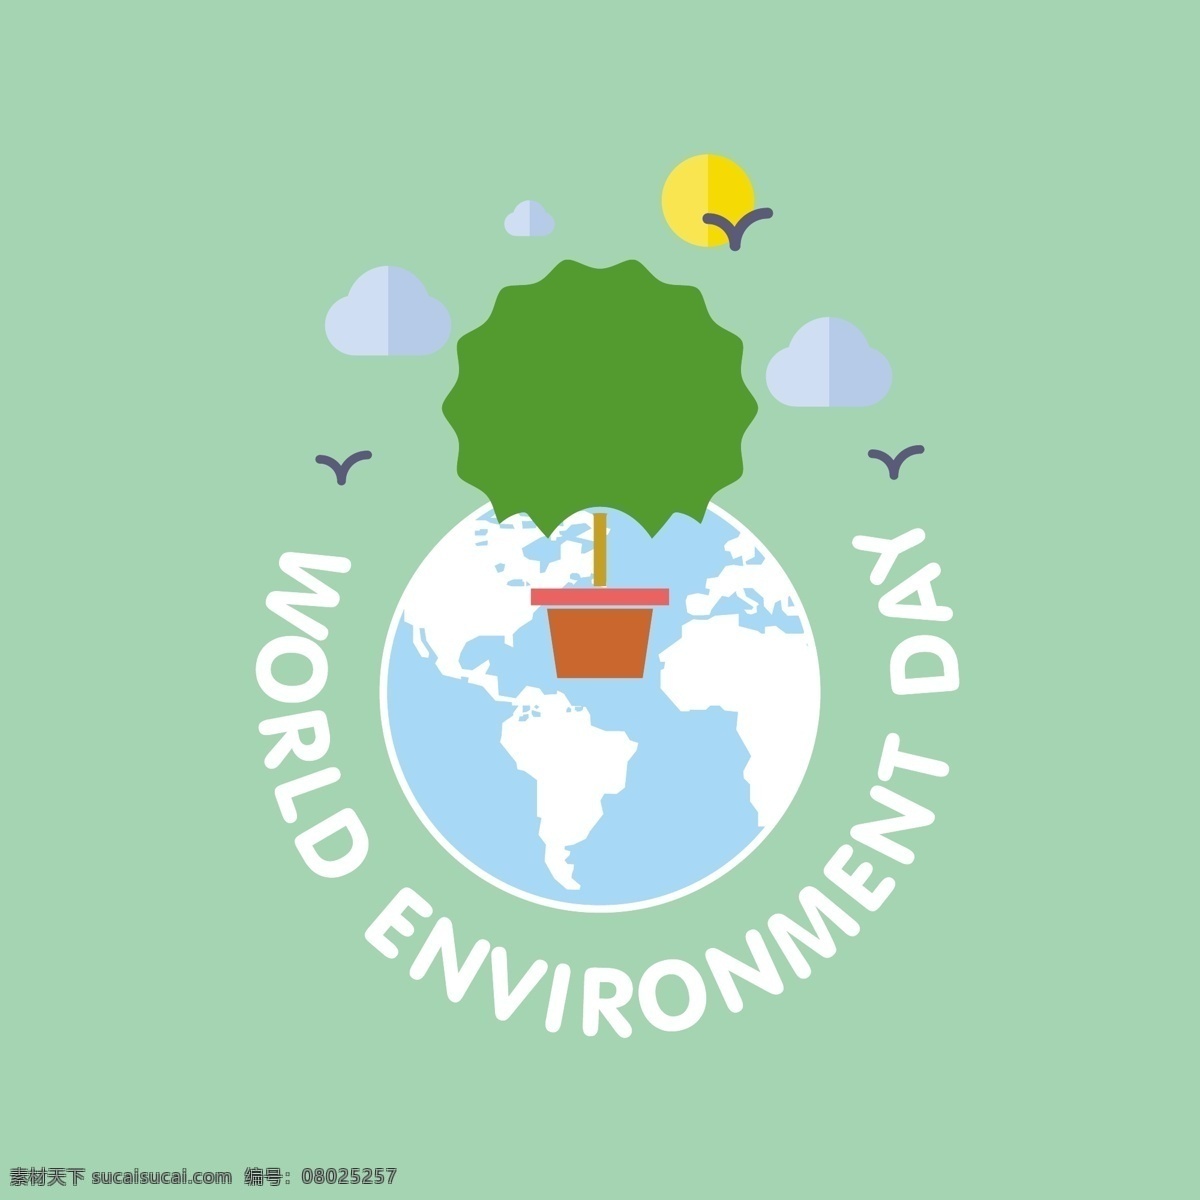 世界环境日 一棵树 背景 世界 地球 壁纸 生态 循环 有机 自然 环境 地面 绿色能源 节约 保护 日 生态友好